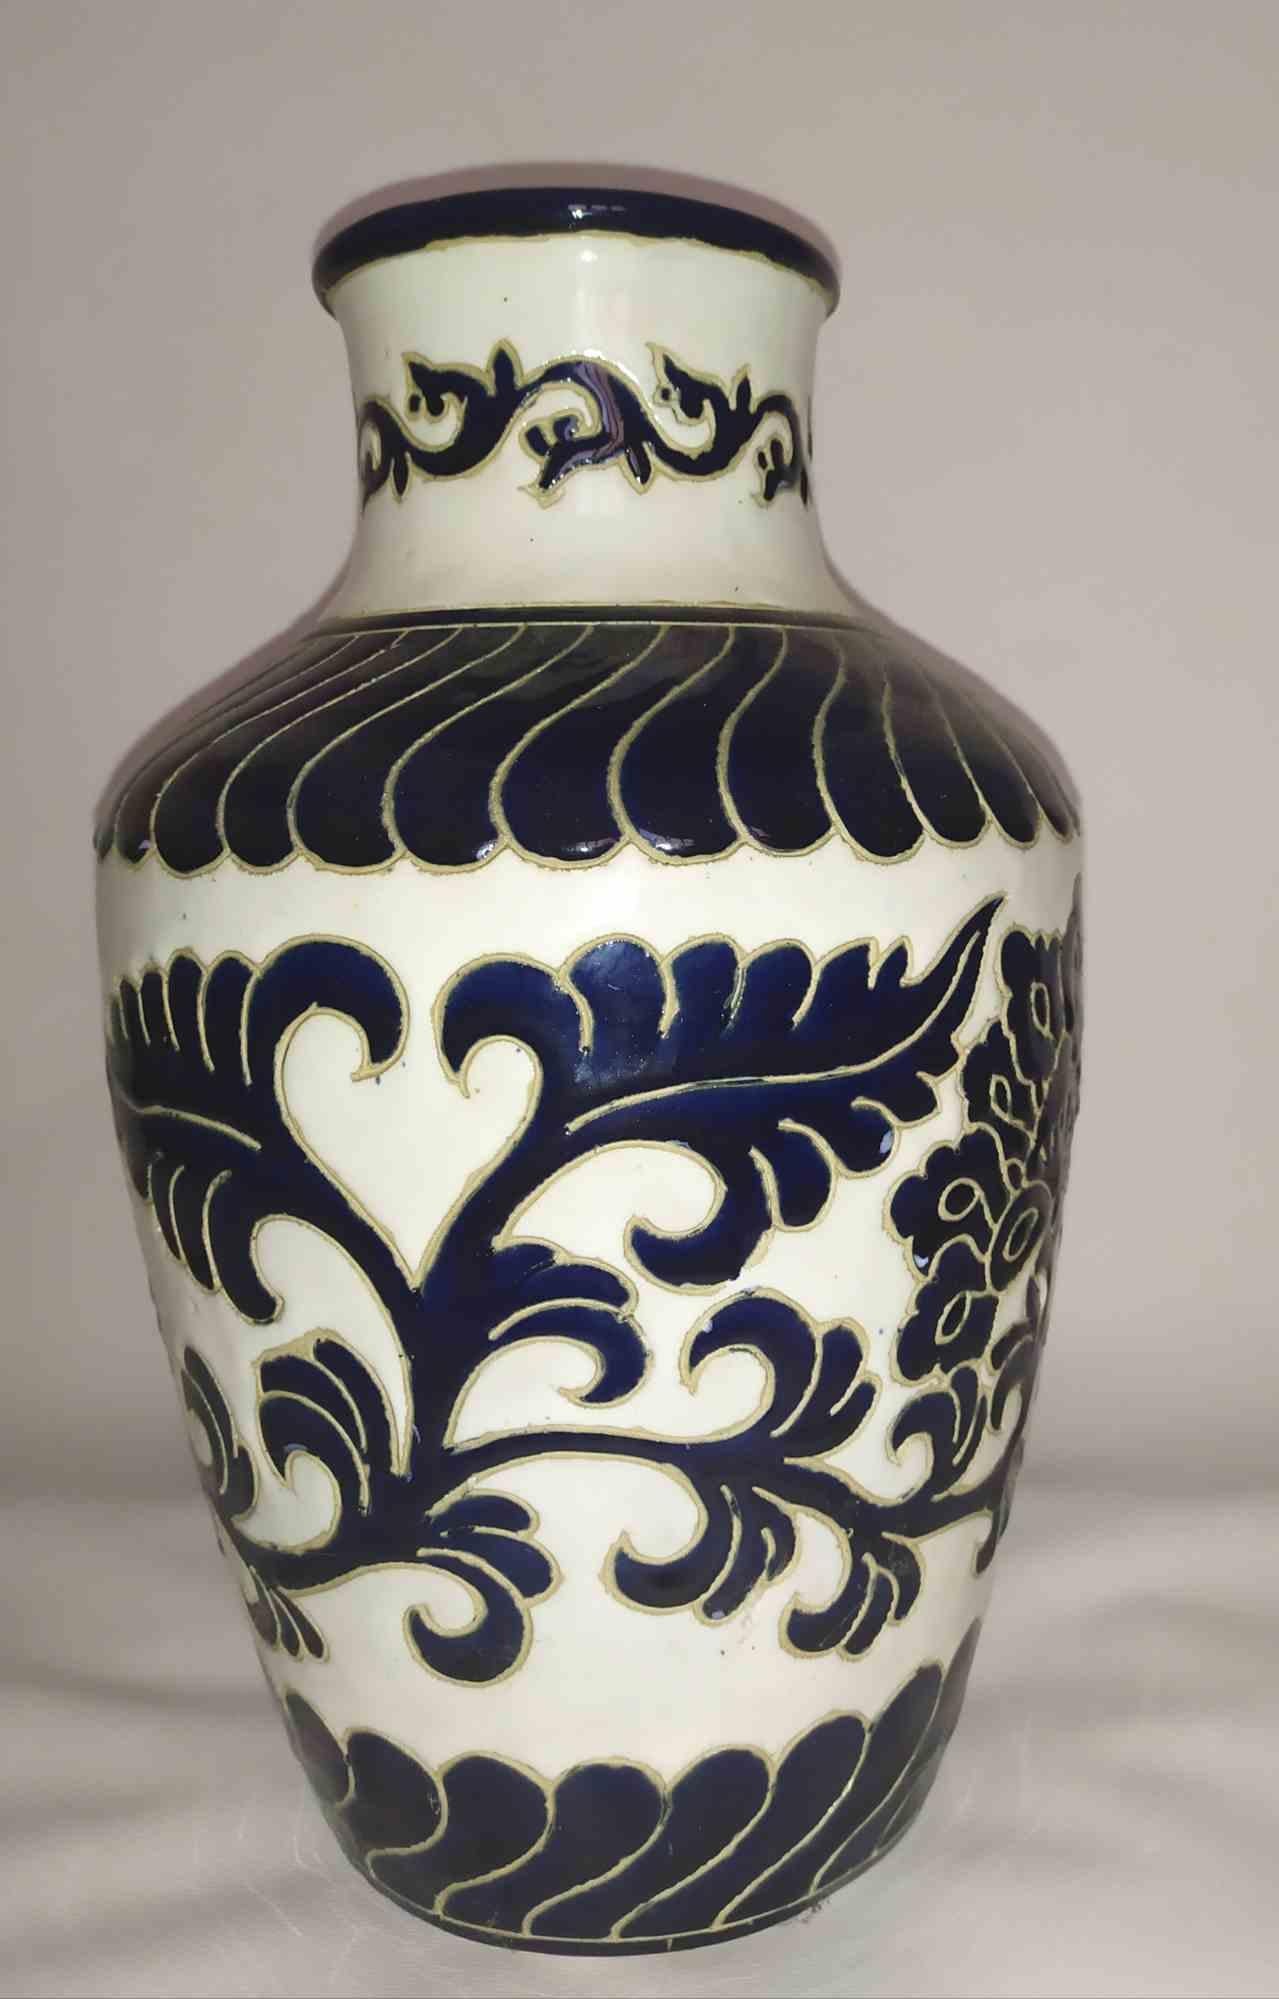 Magnifique vase réalisé à Capodimonte (Naples) dans les années 1960.

Fabriqués et peints à la main.

Très petit éclat sur le haut du manche.

